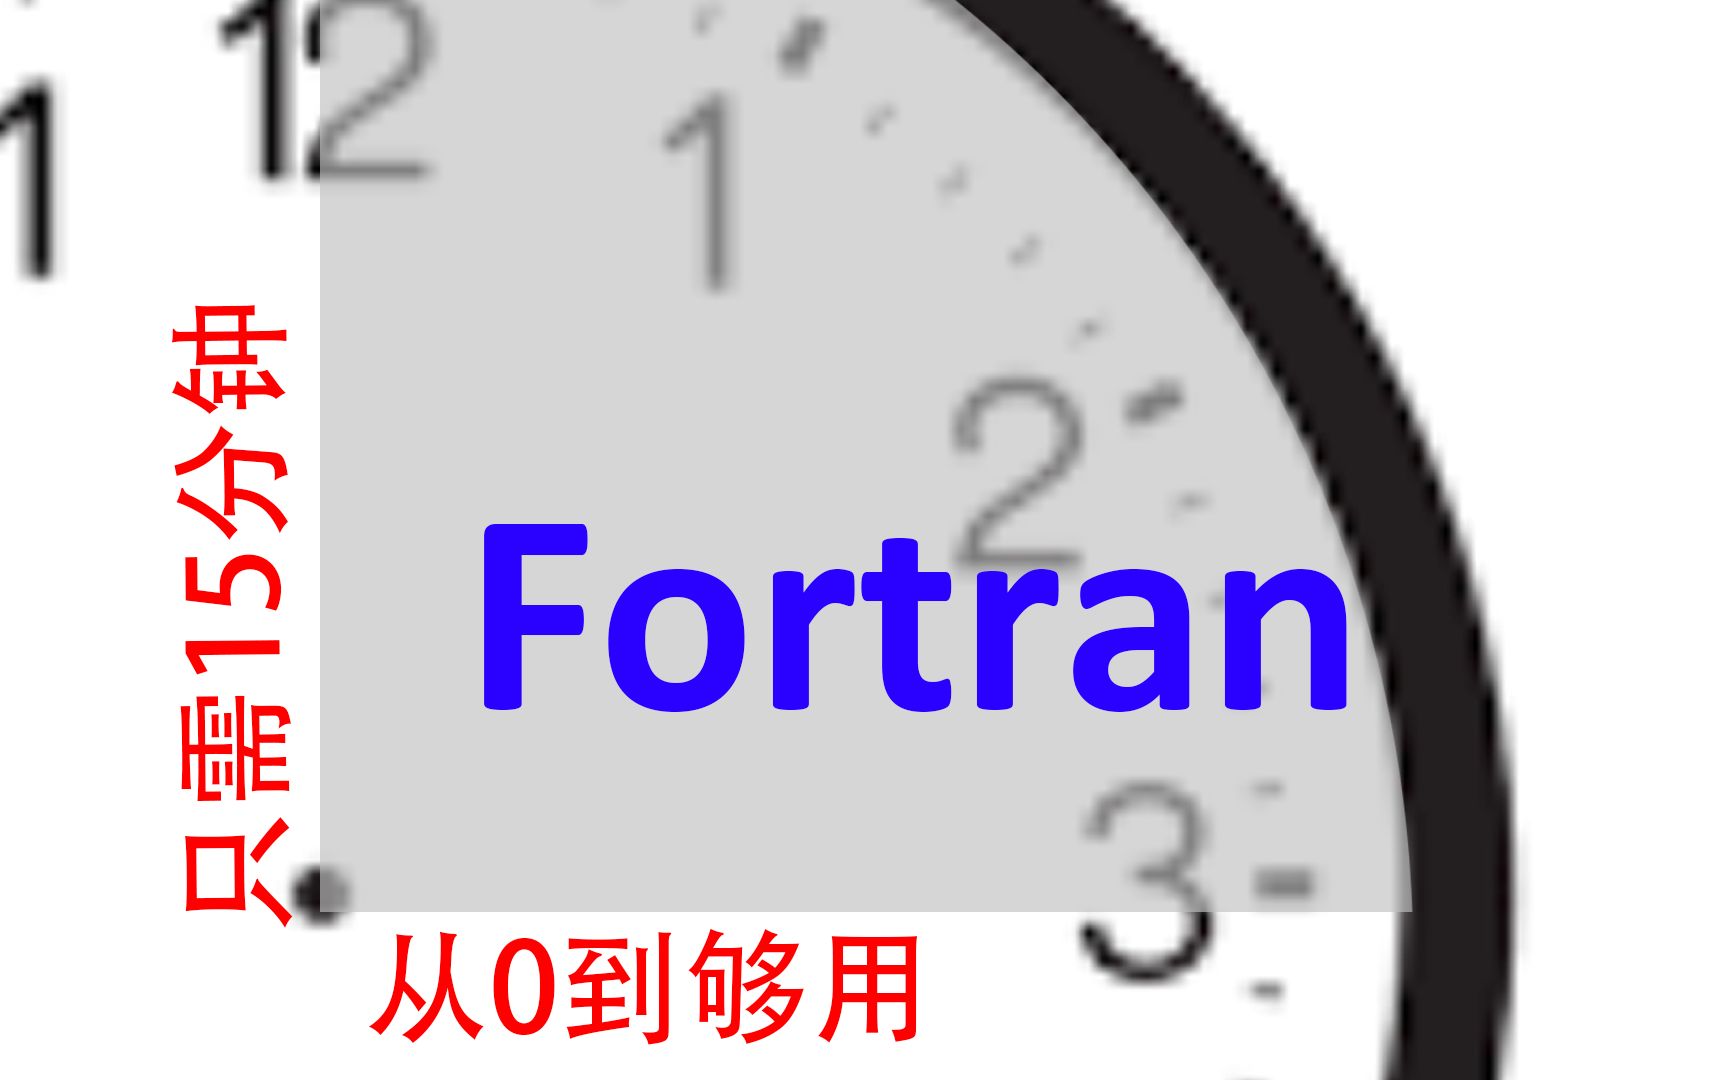 15分钟Fortran从0到够用 #030